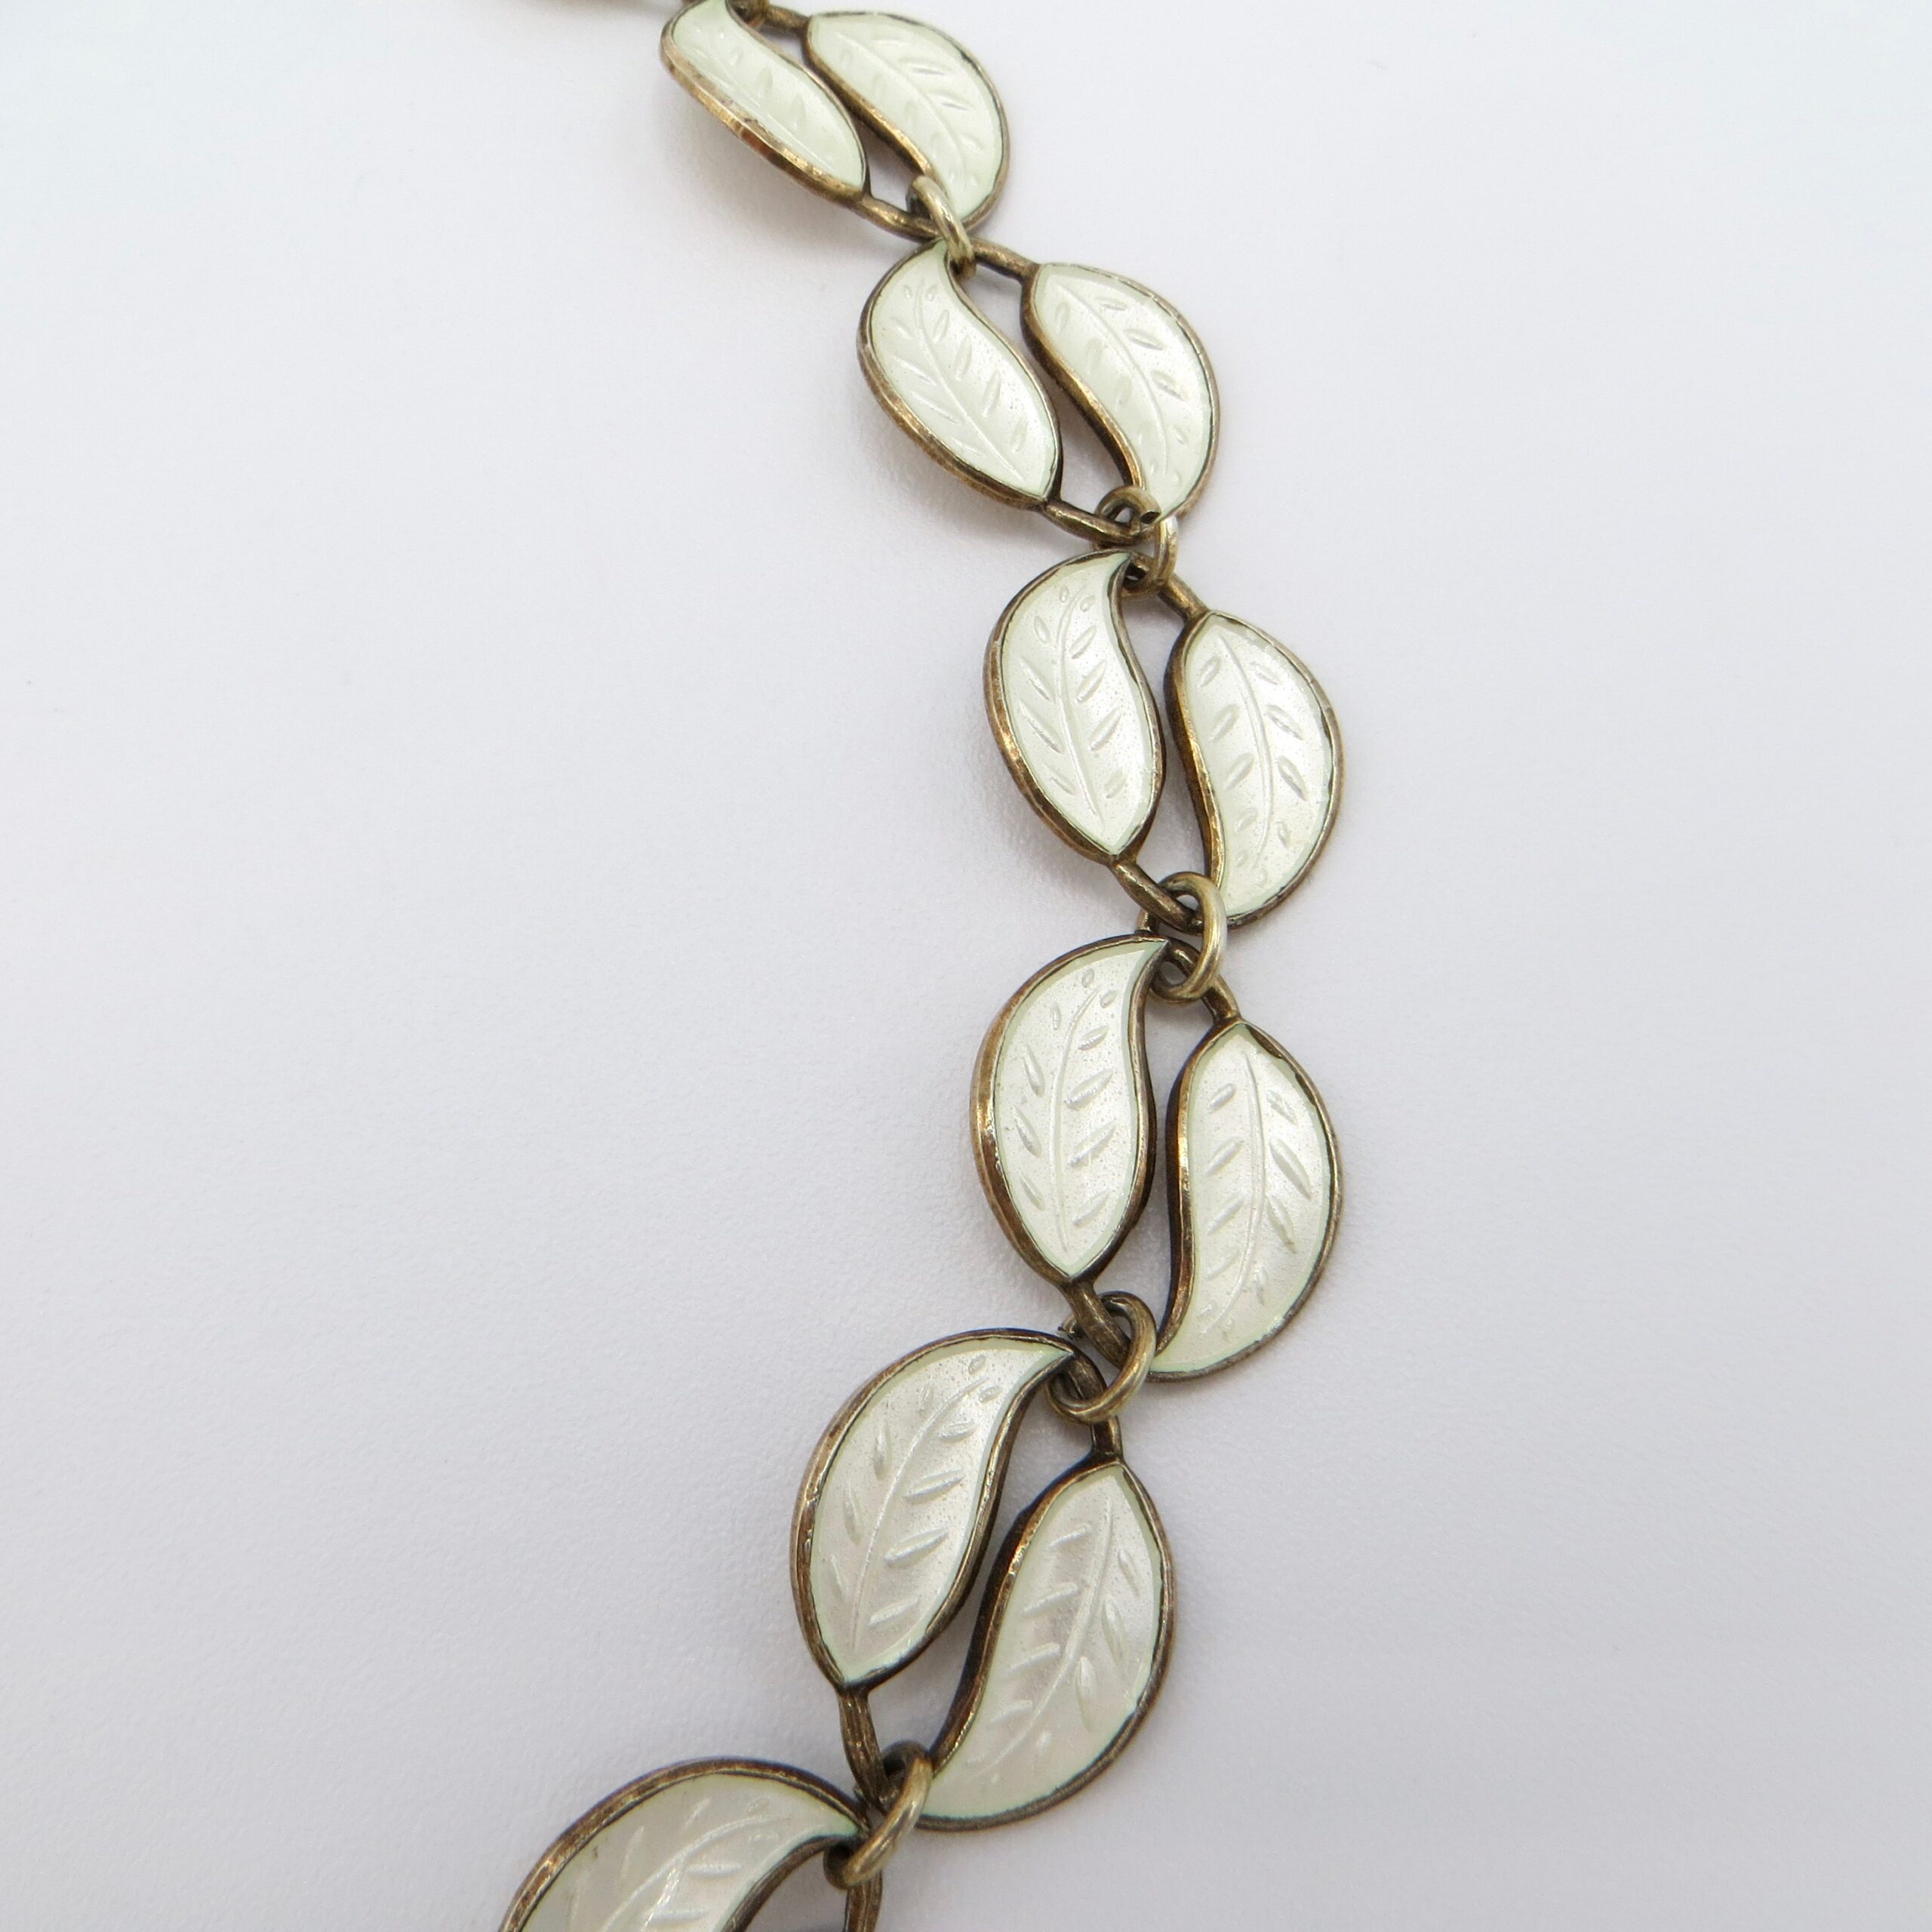 Vintage White Enamel Anderson Leaf Necklace